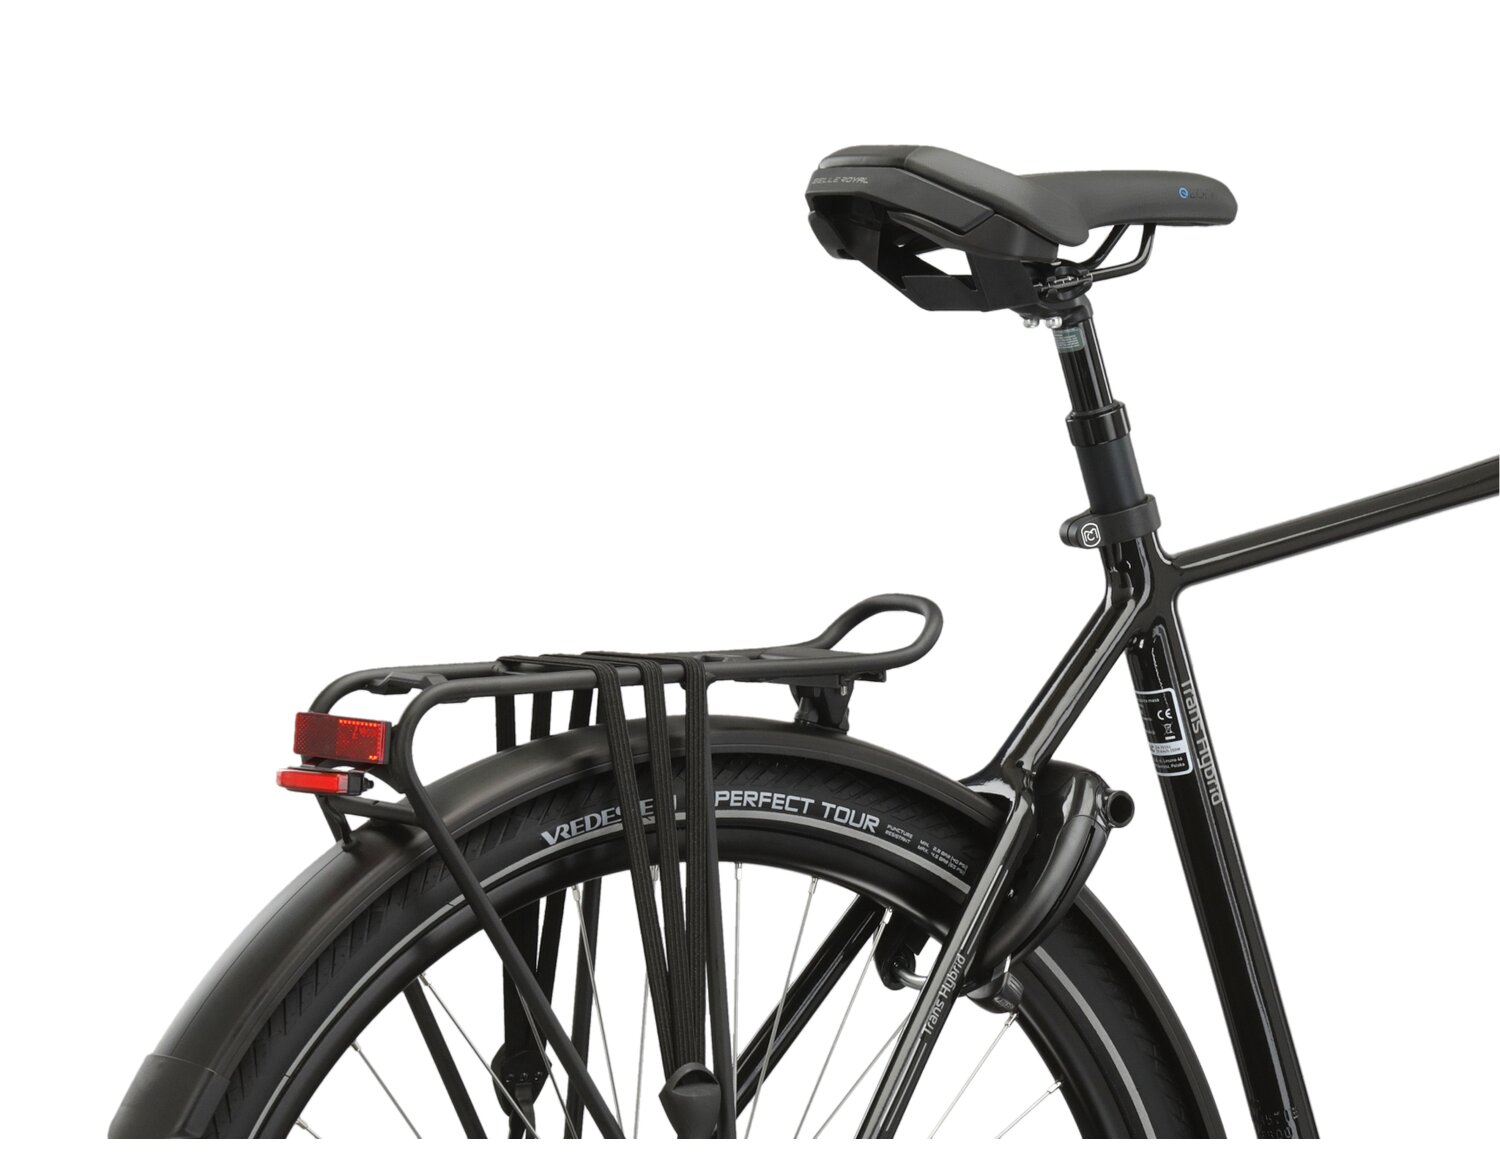  Bagażnik rowerowy, siodełko Selle Royale oraz zintegrowane oświetlenie w rowerze elektrcyznym Kross Trans Hybrid Prestige 